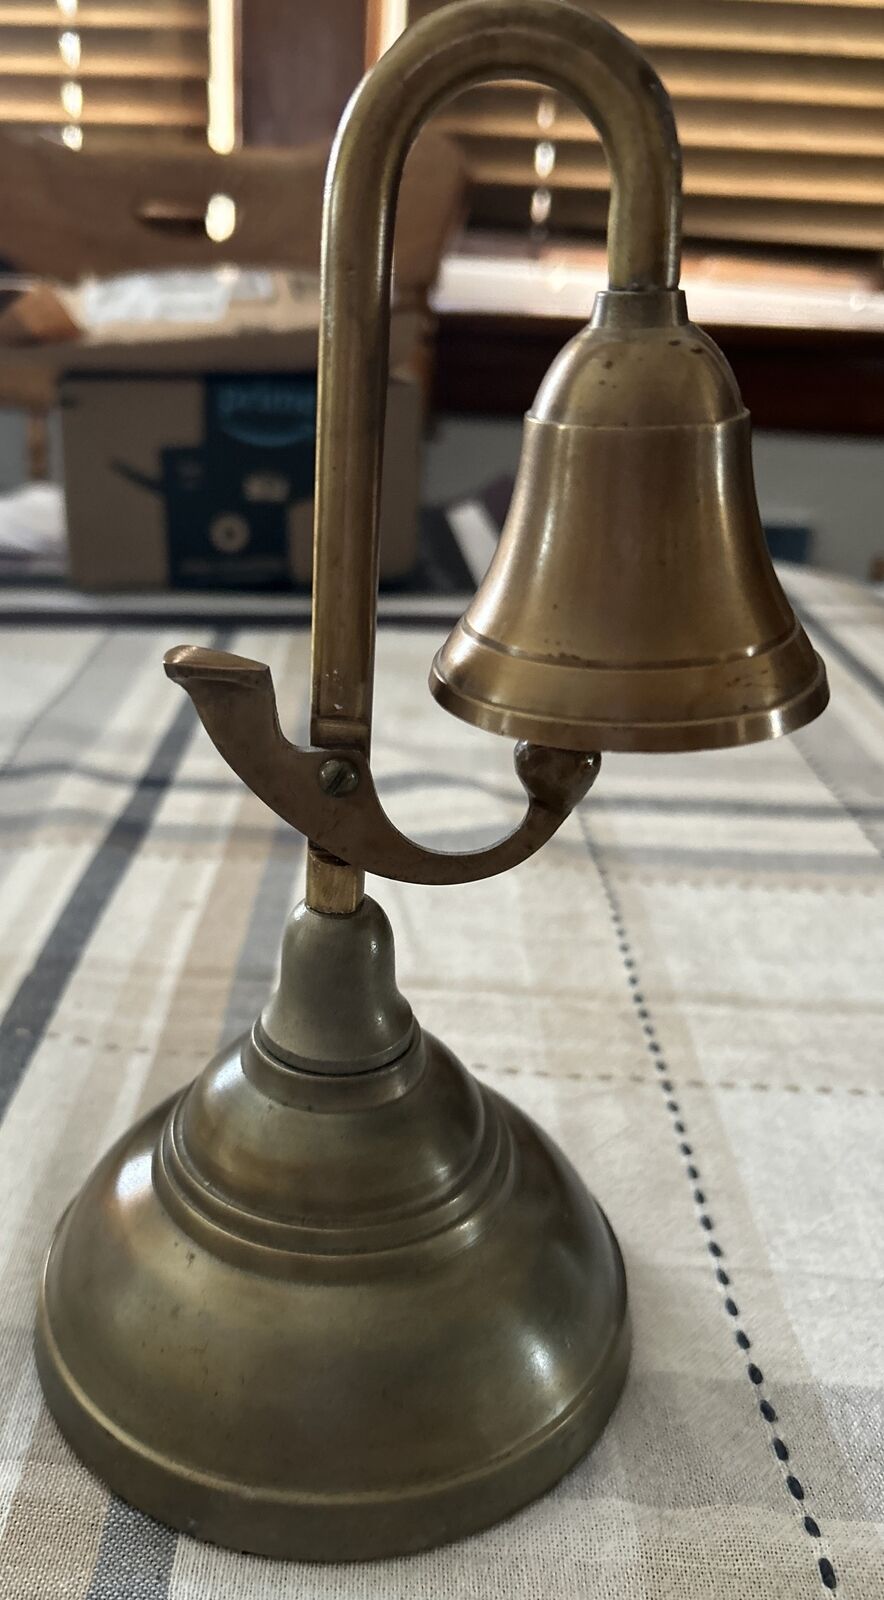 Vintage gooseneck Brass tabl bell, Hotel reception bell.